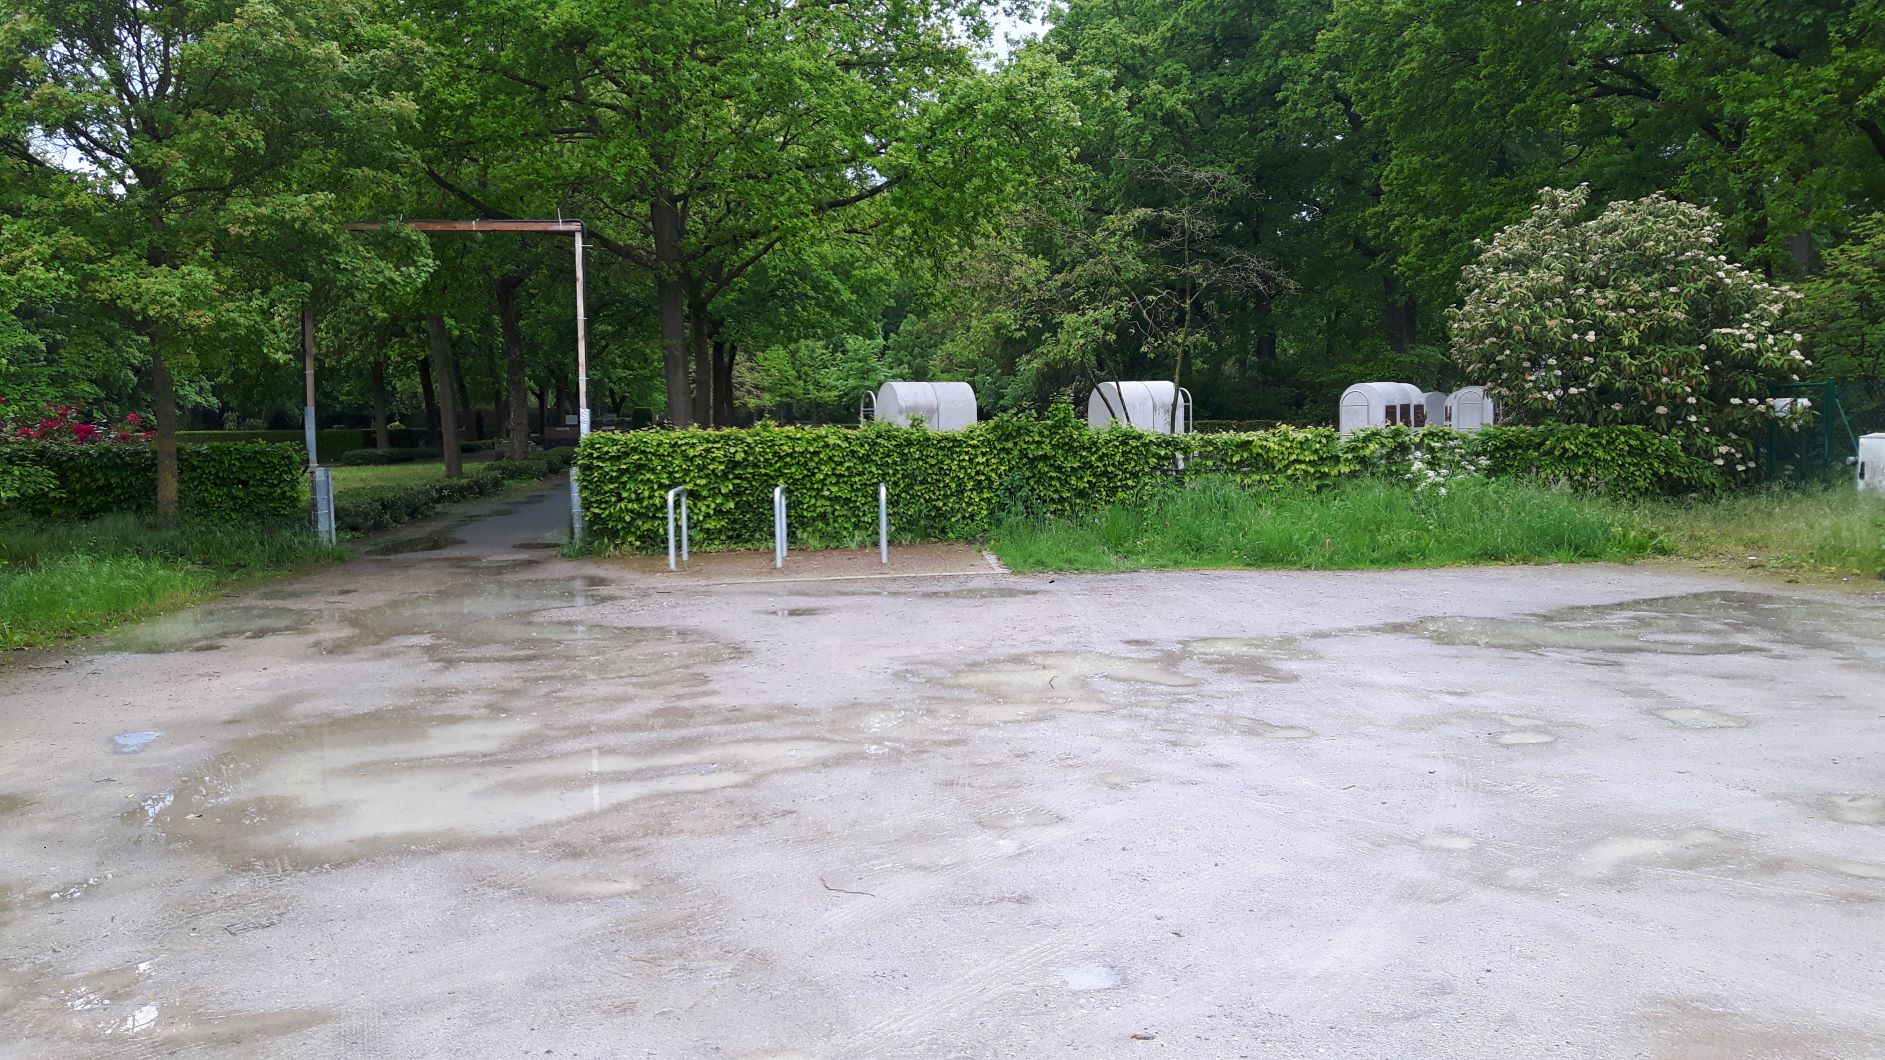 Desolater Parkplatz am Hauptfriedhof: Keine Verbesserung geplant! Schlechte (Stadt-)Ansichten entlang der Römer-Lippe-Route